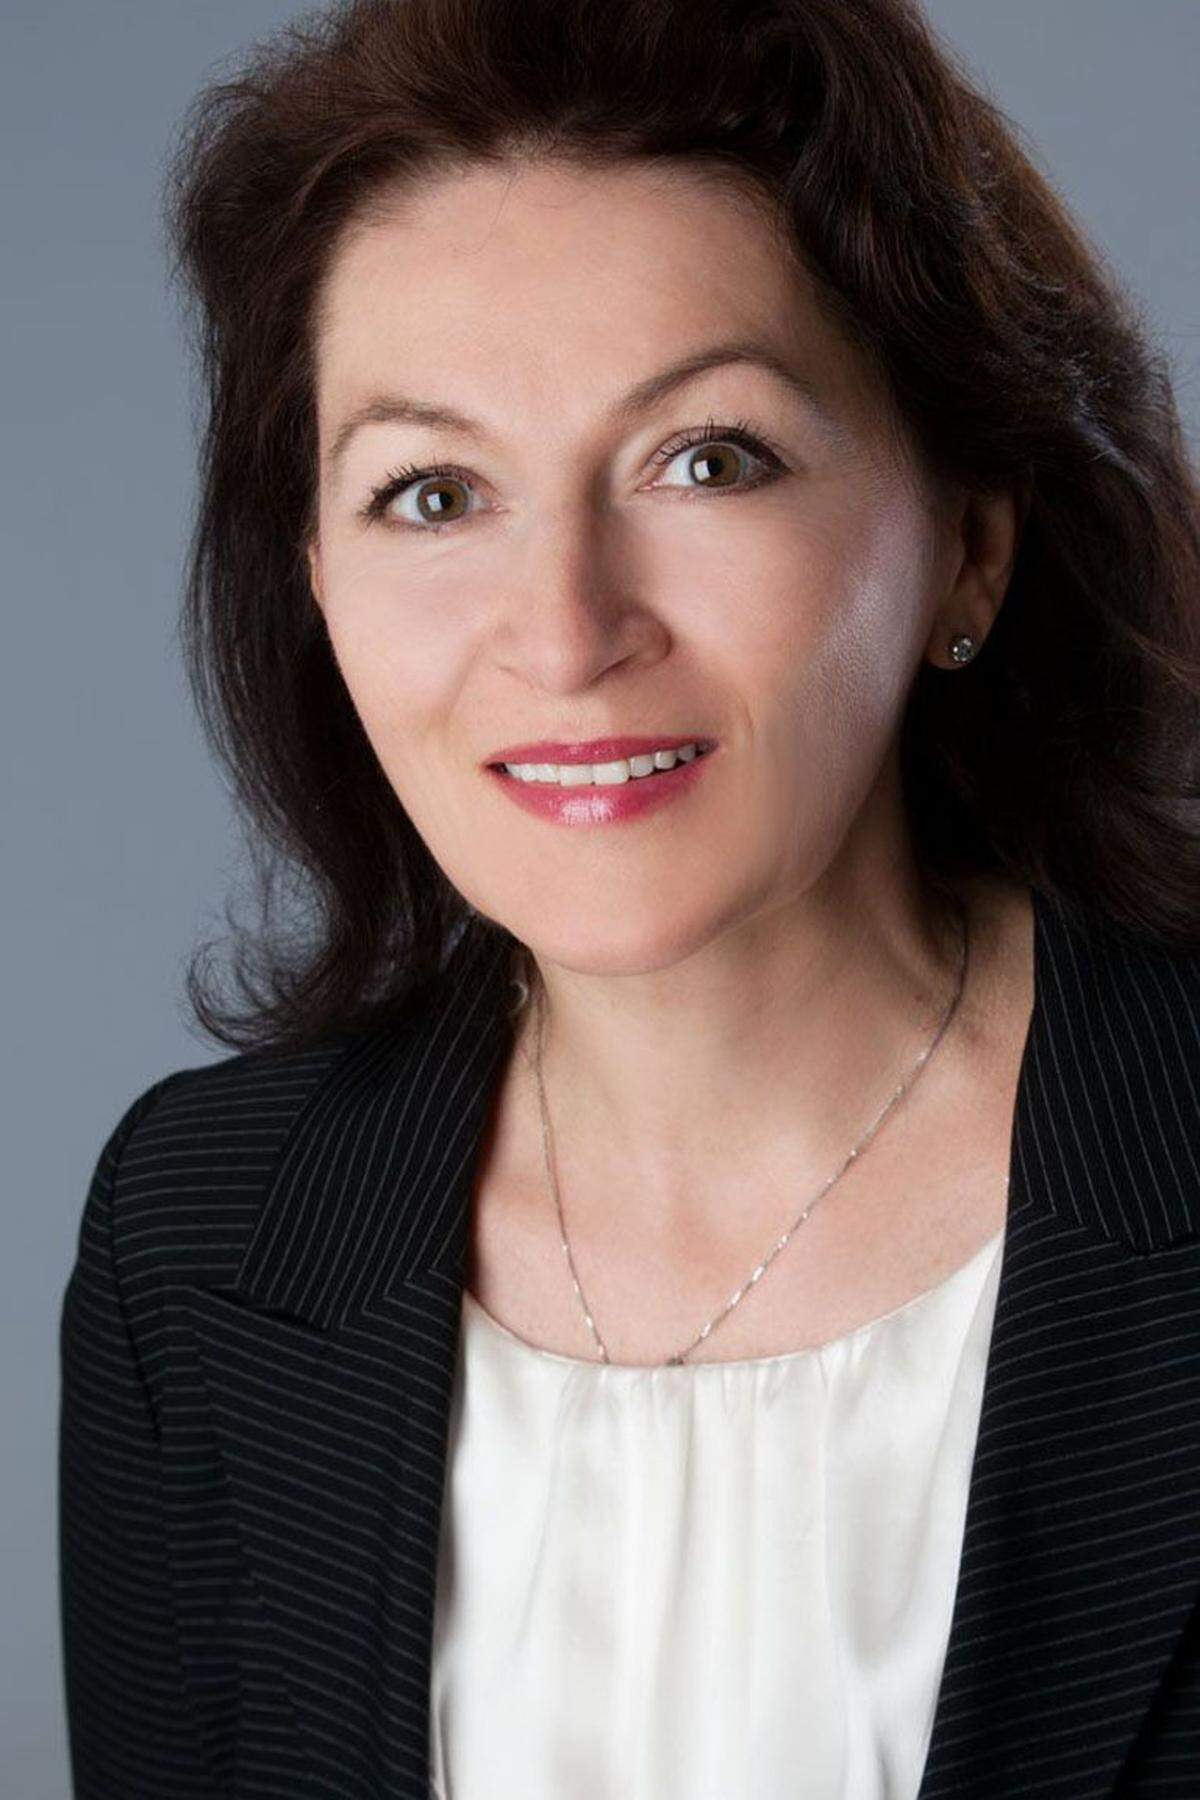 Gabriela Grzywacz ist seit April neue Geschäftsführerin bei RESAG Property Management. Zuletzt zeichnete sie als CFO und kaufmännische Leiterin des Österreichischen Wirtschaftsverlags sowie der Medizin Medien GmbH verantwortlich. Davor war sie über zehn Jahre in leitenden Funktionen in den Bereichen Finanzen und Controlling für die Daimler AG tätig.